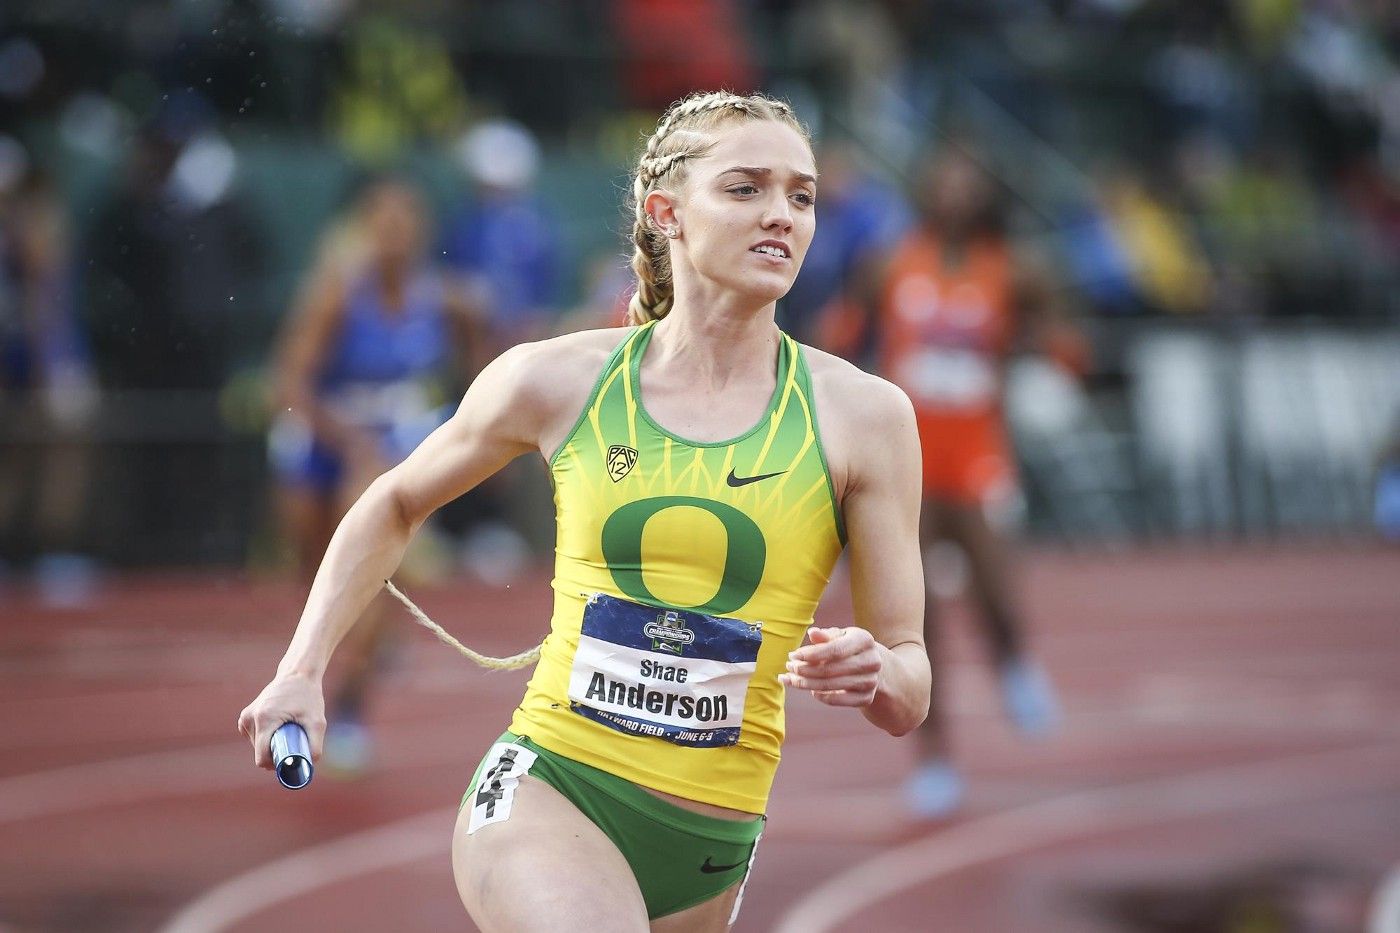 University of Oregon Female Runner: Shae Anderson